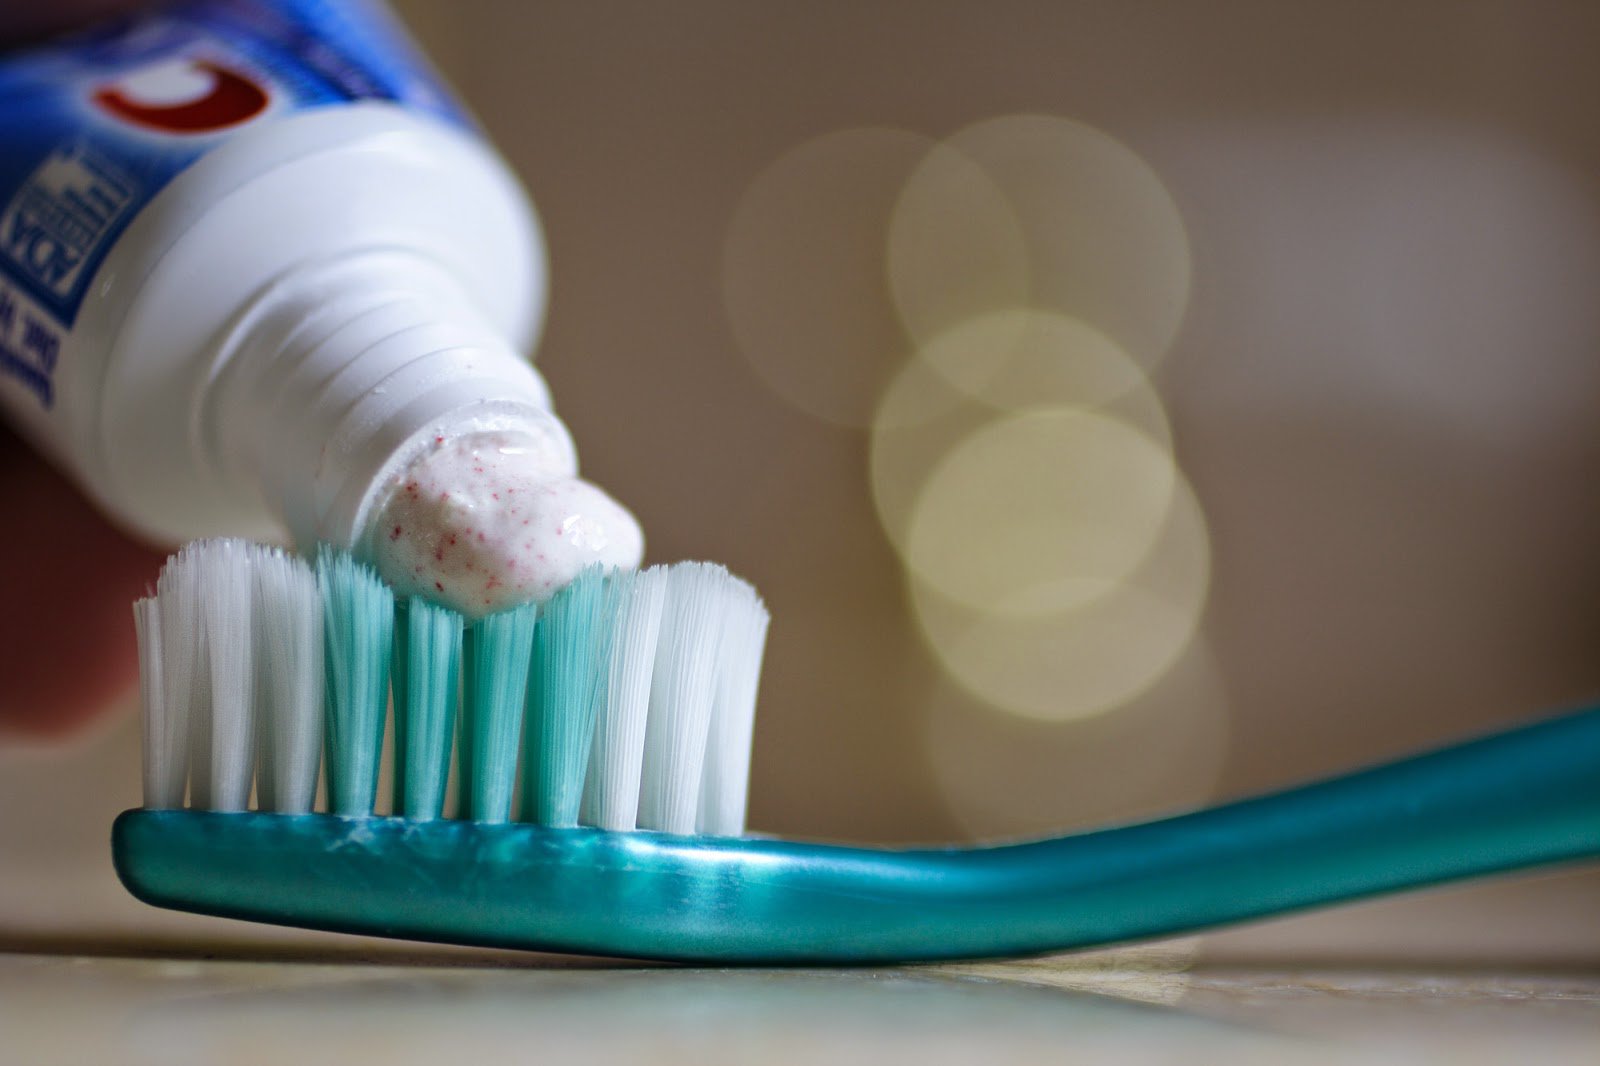 Científicos advierten que dentífricos y chicles pueden producir cáncer